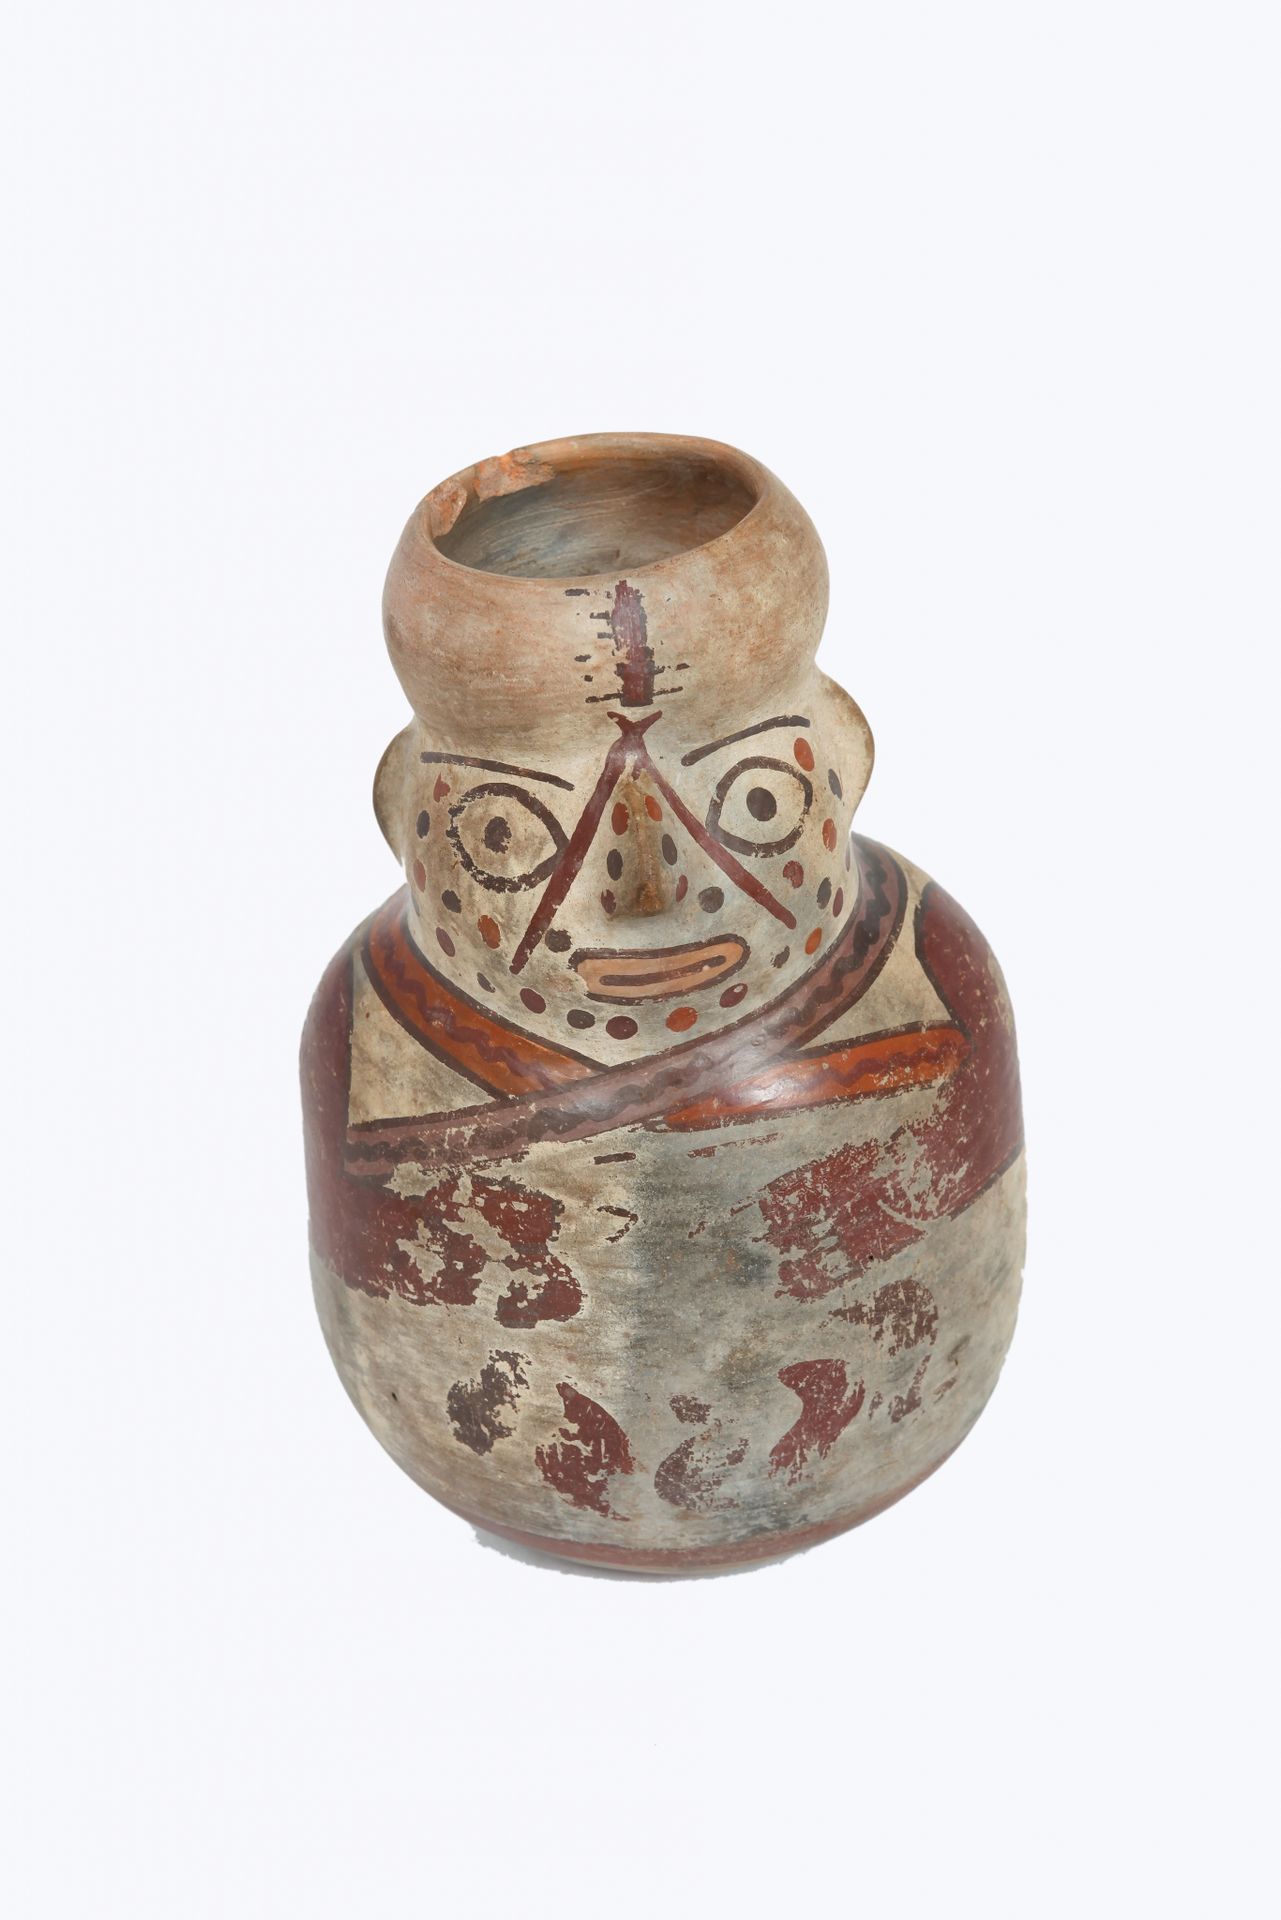 Vase 显示一个萨满的半身像，脸上画着点点的仪式。

多色赤土，颈部有缺口。

纳斯卡，秘鲁，公元200-600年

15 x 10厘米